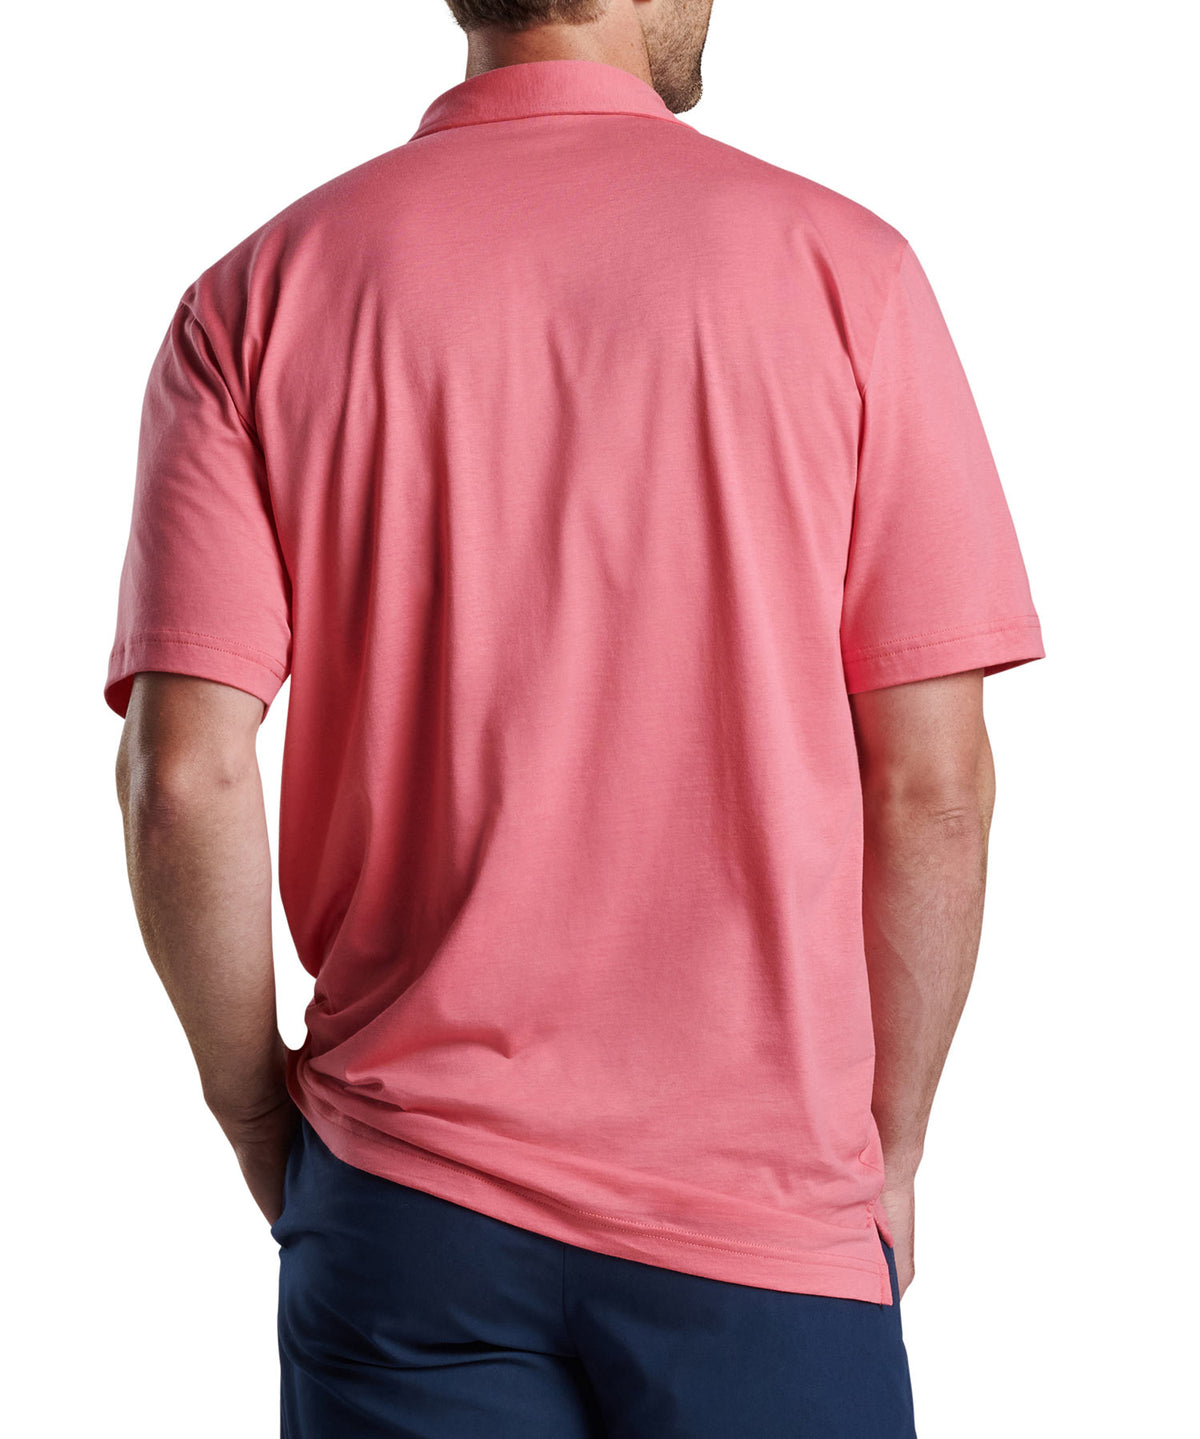 Peter Millar Short Sleeve Pilot Mill Polo Knit Shirt, Men's Big & Tall